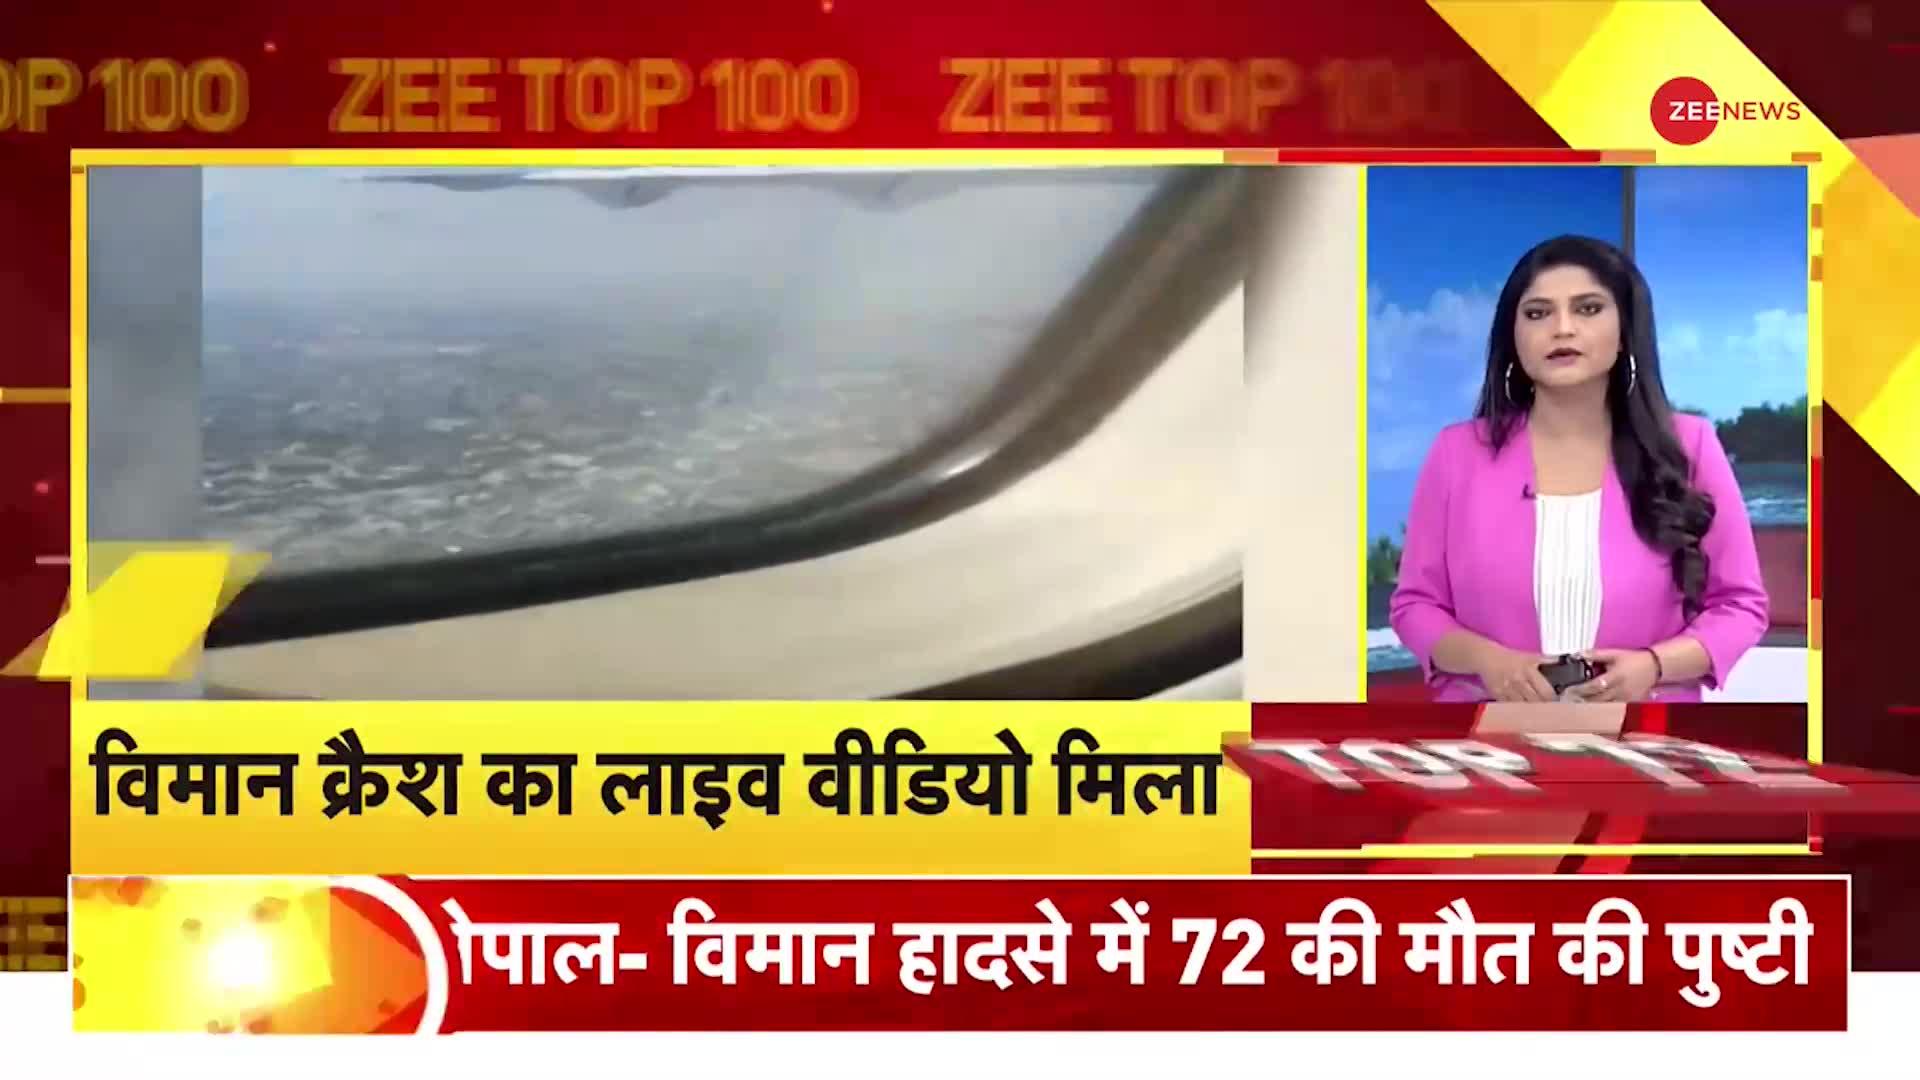 ZEE TOP 100: इंजन में गड़बड़ी से हादसे की आशंका, जांच के लिए 5 सदस्यों की टीम गठित | Nepal Plane Crash